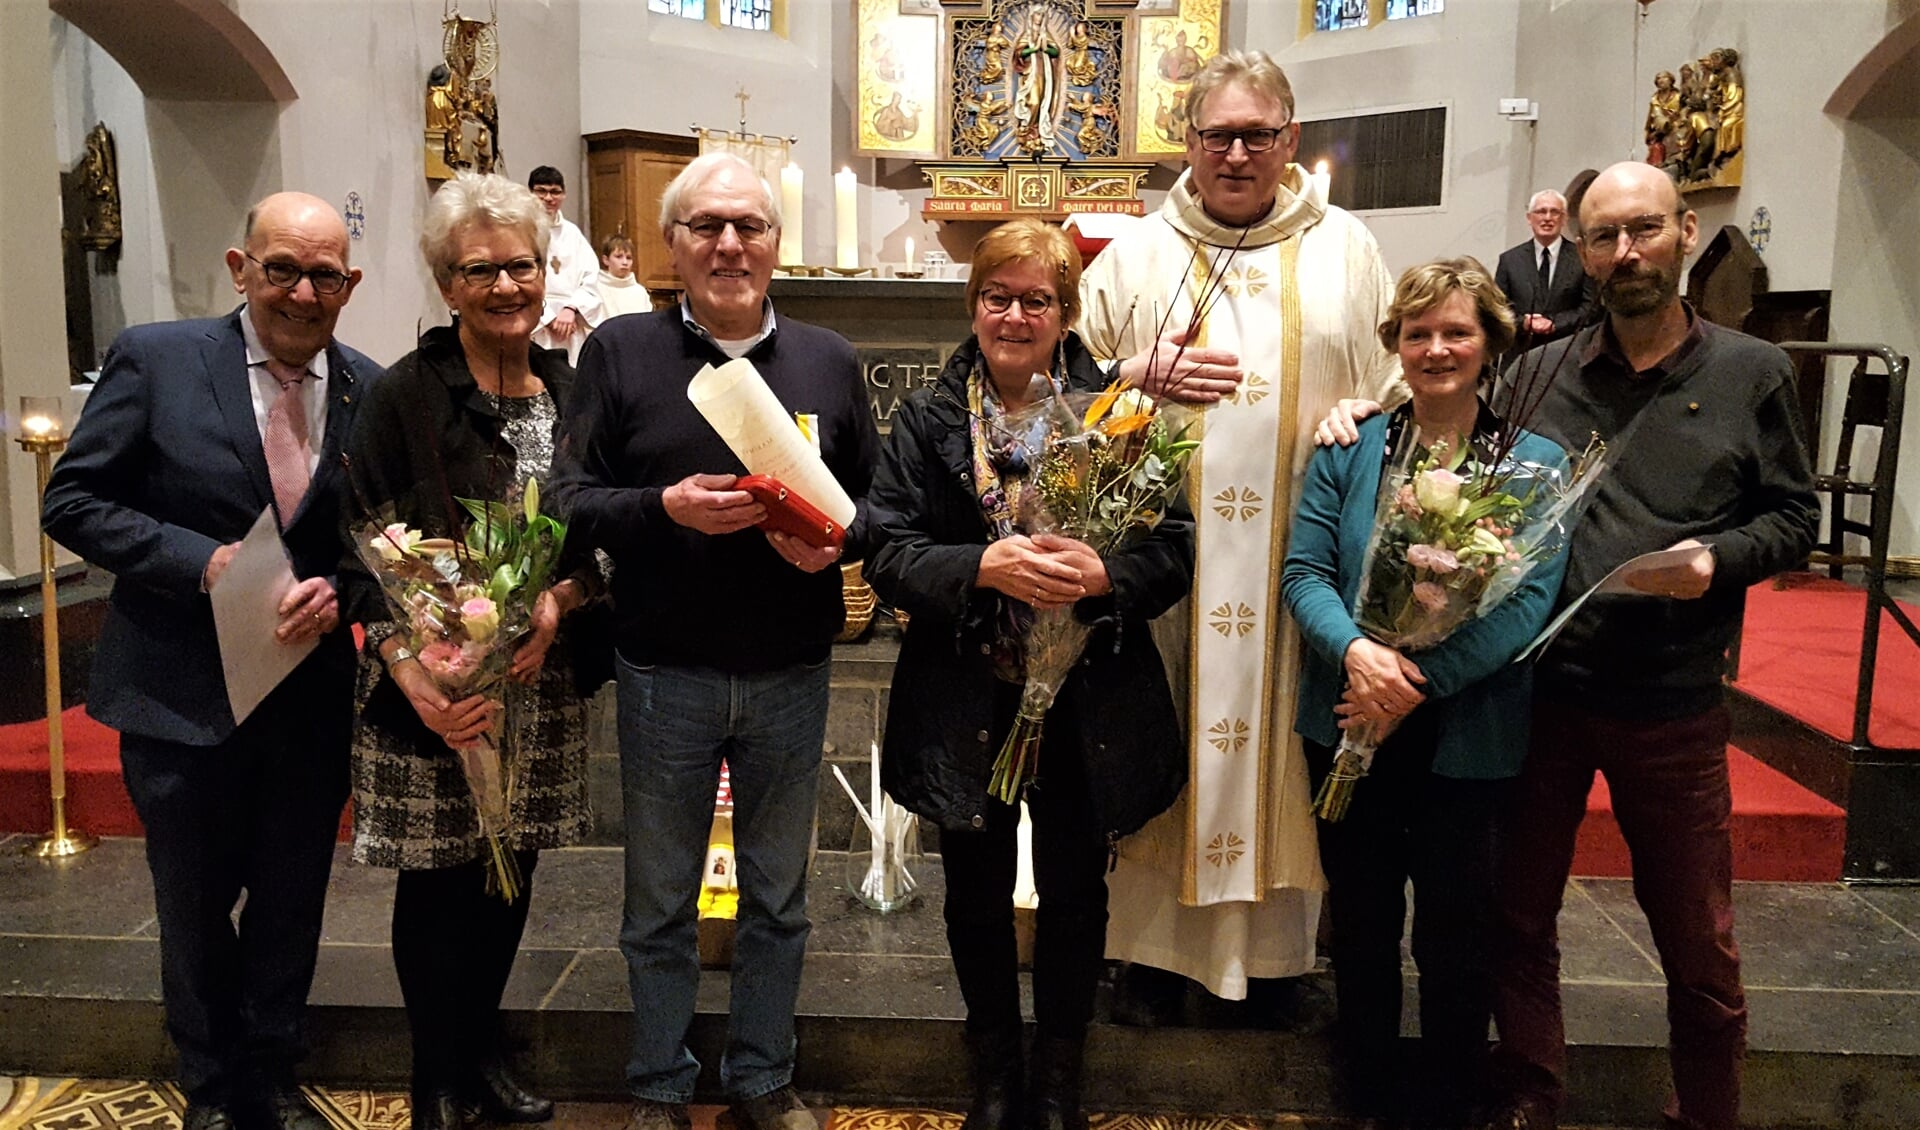 gedecoreerden Jan de Jong, Fons van der Zant en Gerard Harman met echtgenotes en pastoor Hogenelst